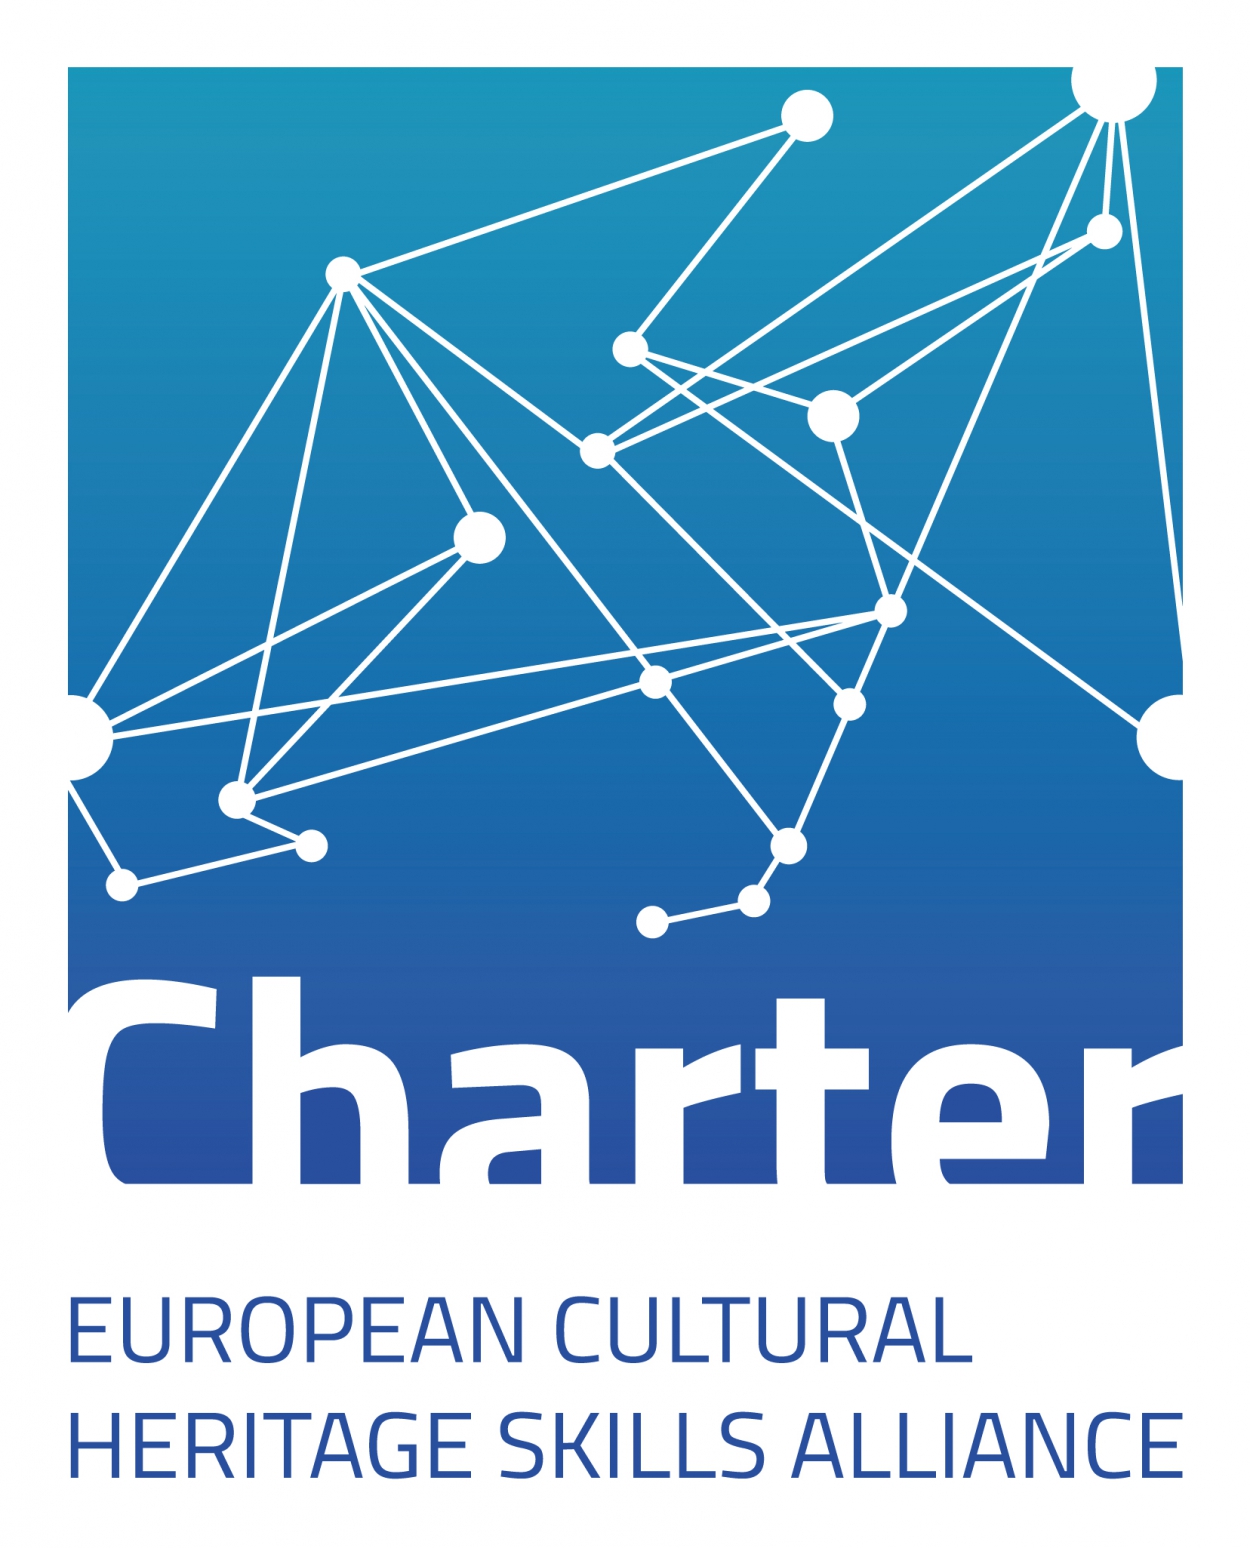 CHARTER - Alianţa europeană pentru competenţe sectoriale specifice domeniului patrimoniului cultural